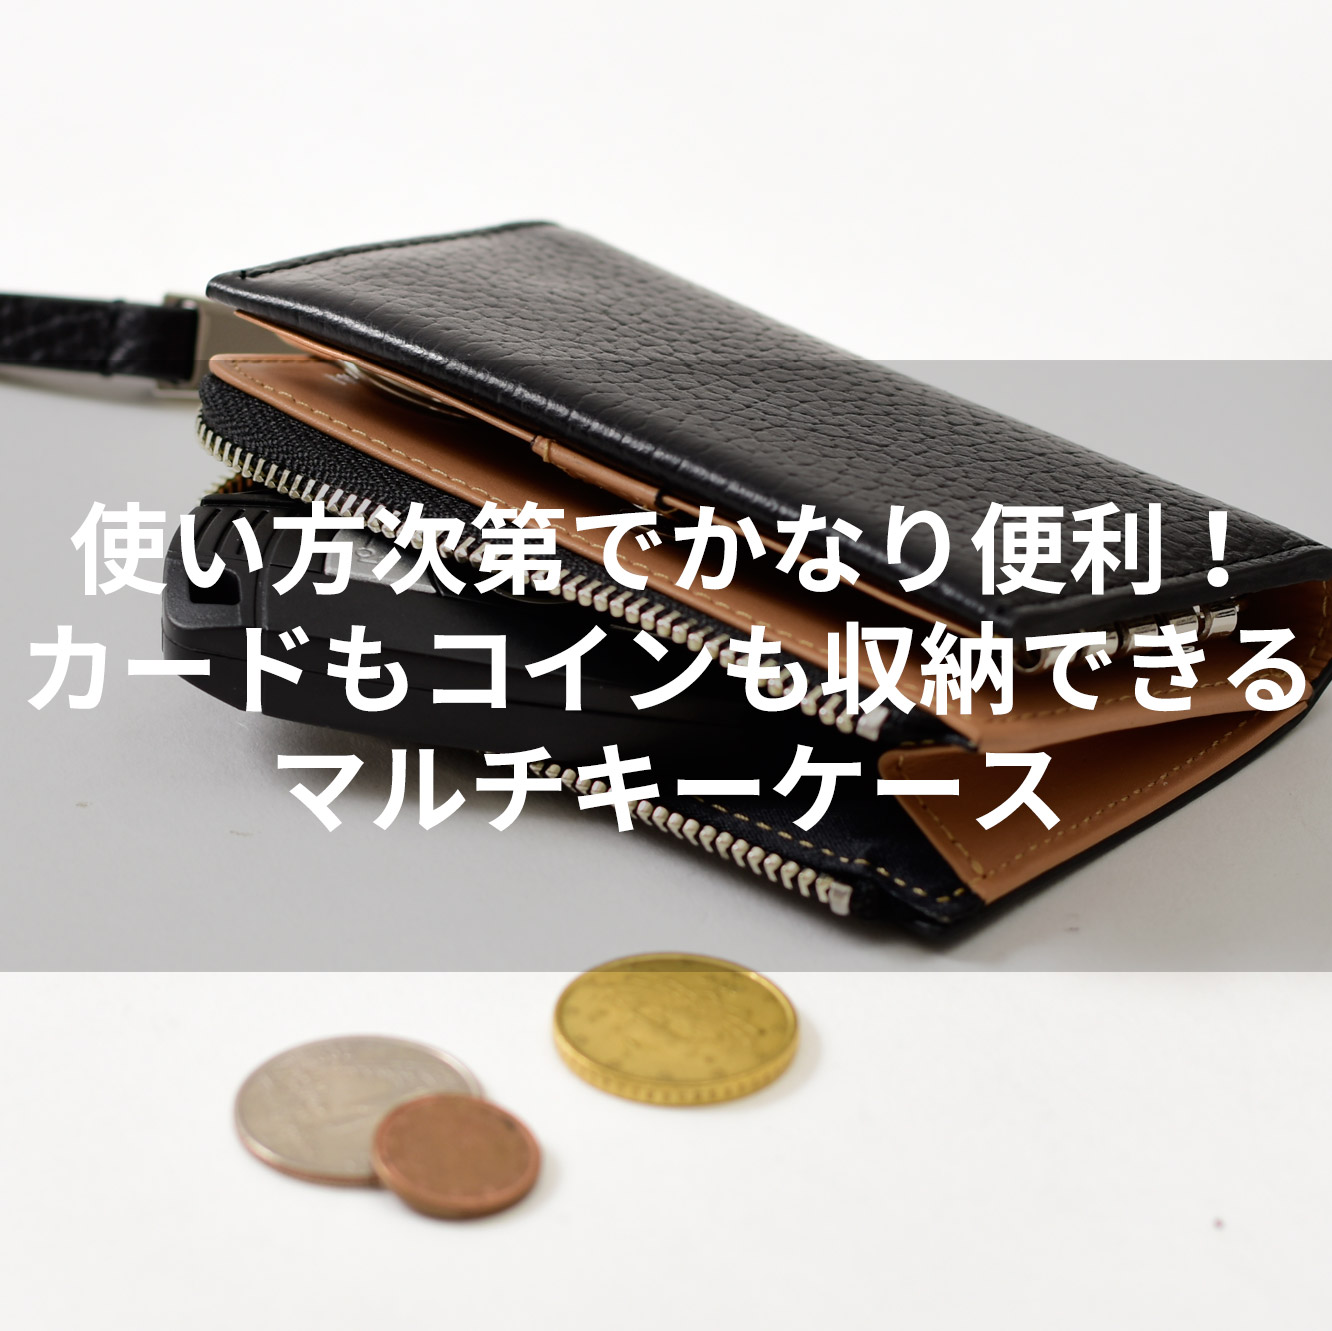 使い方次第でかなり便利 カードもコインも収納できるマルチキーケース Iketei Online Magazine